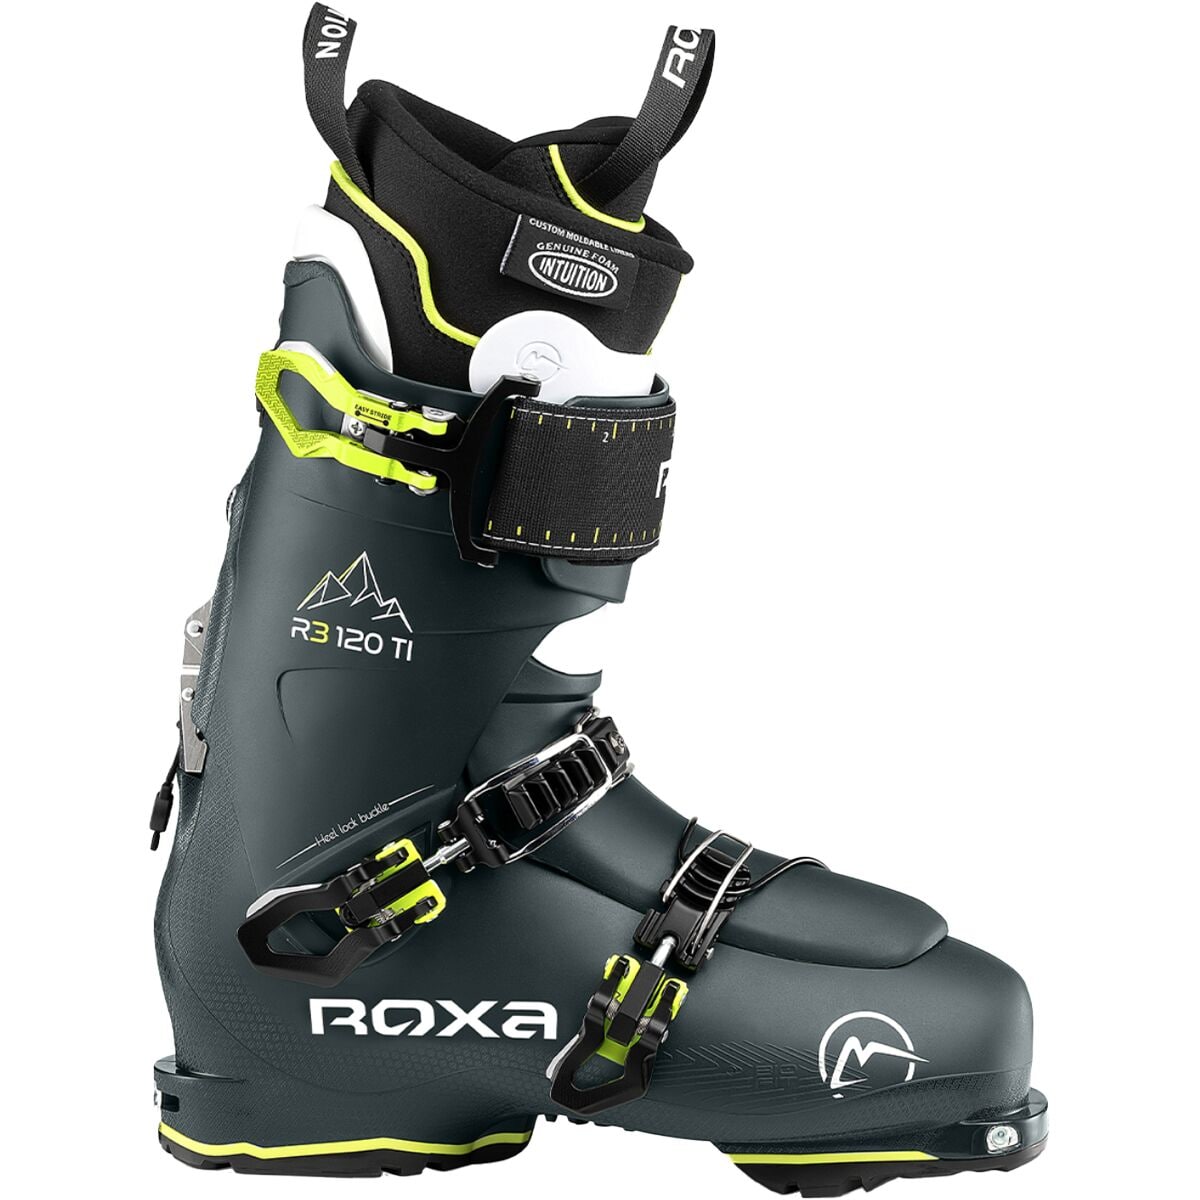 Ботинки alpine touring r3 120 ti ir gw — 2024 г. Roxa, цвет dark green/white